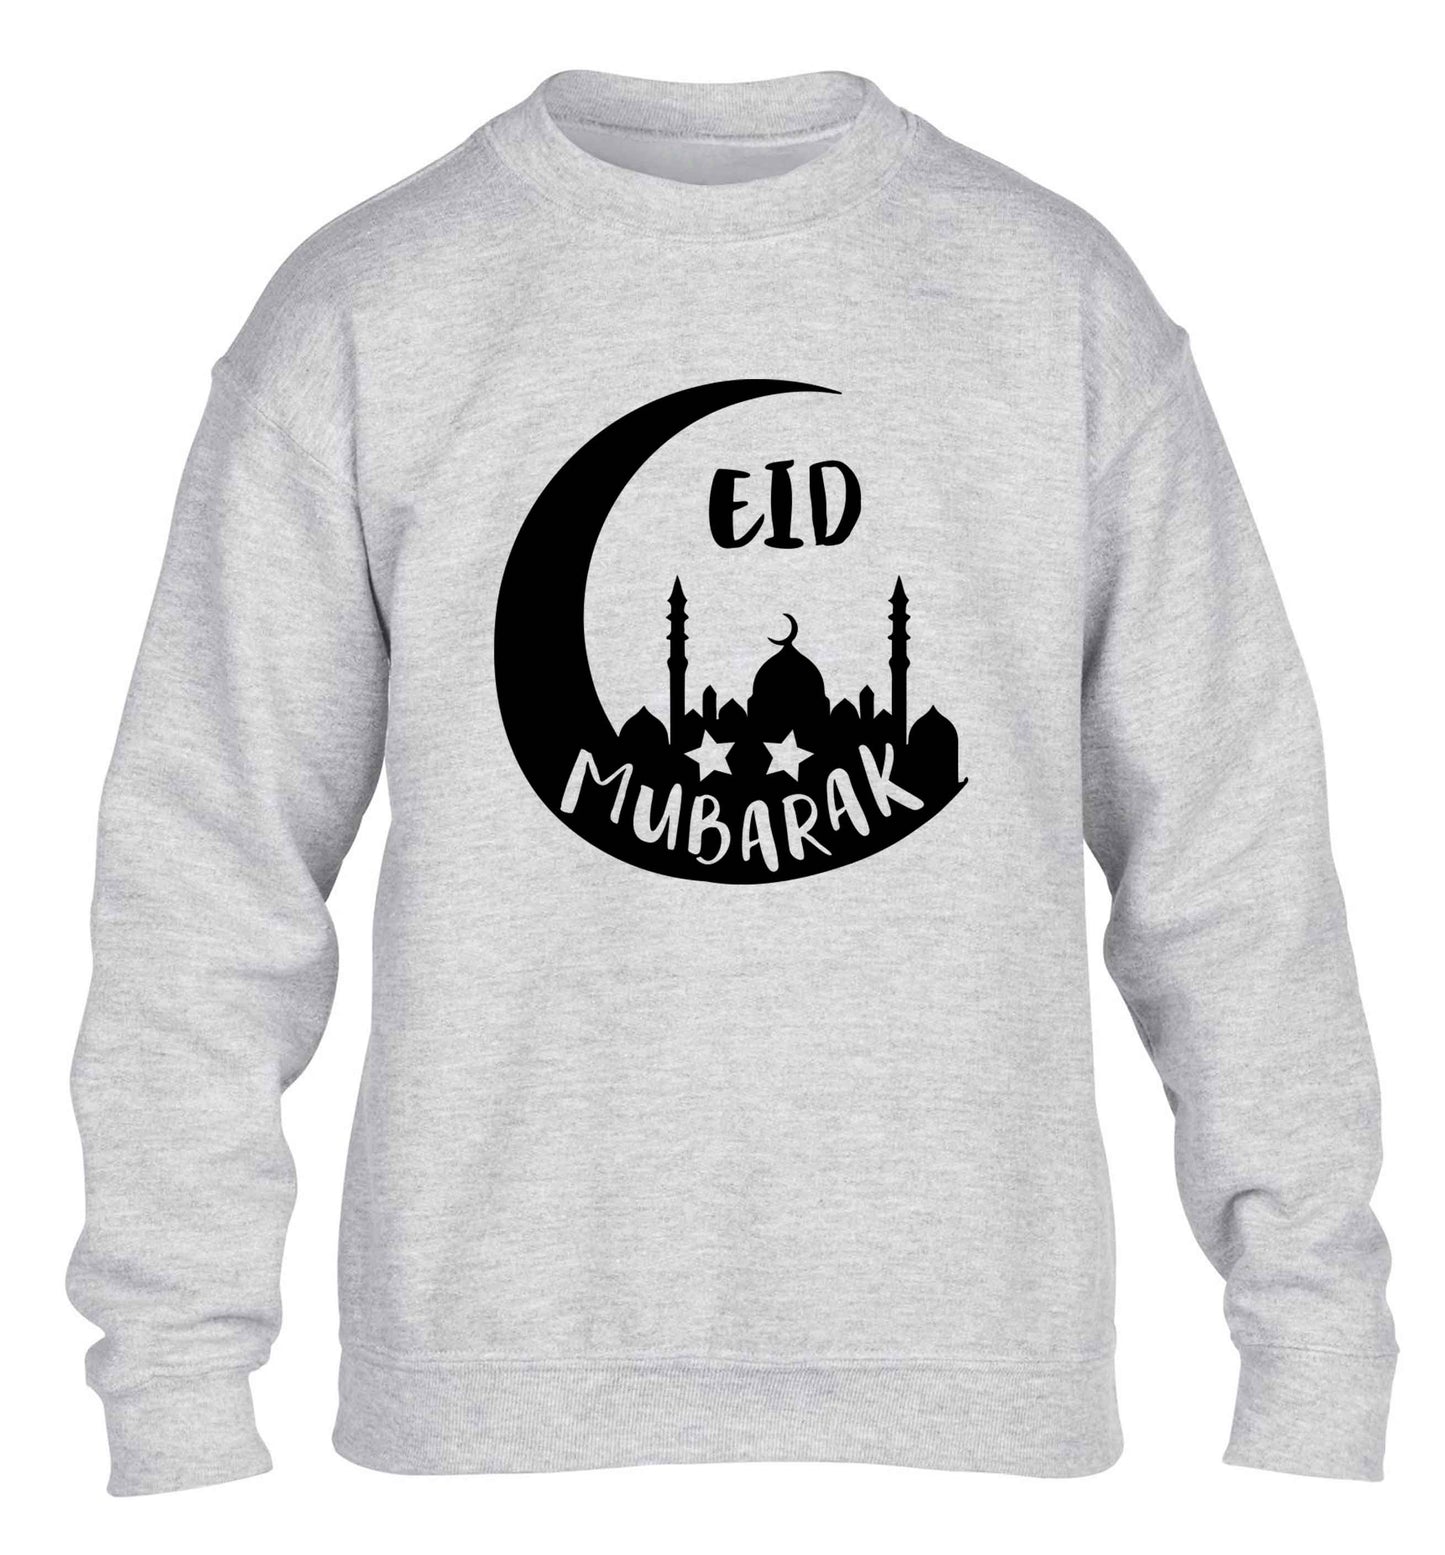 Eid mubarak children's grey sweater 12-13 Years